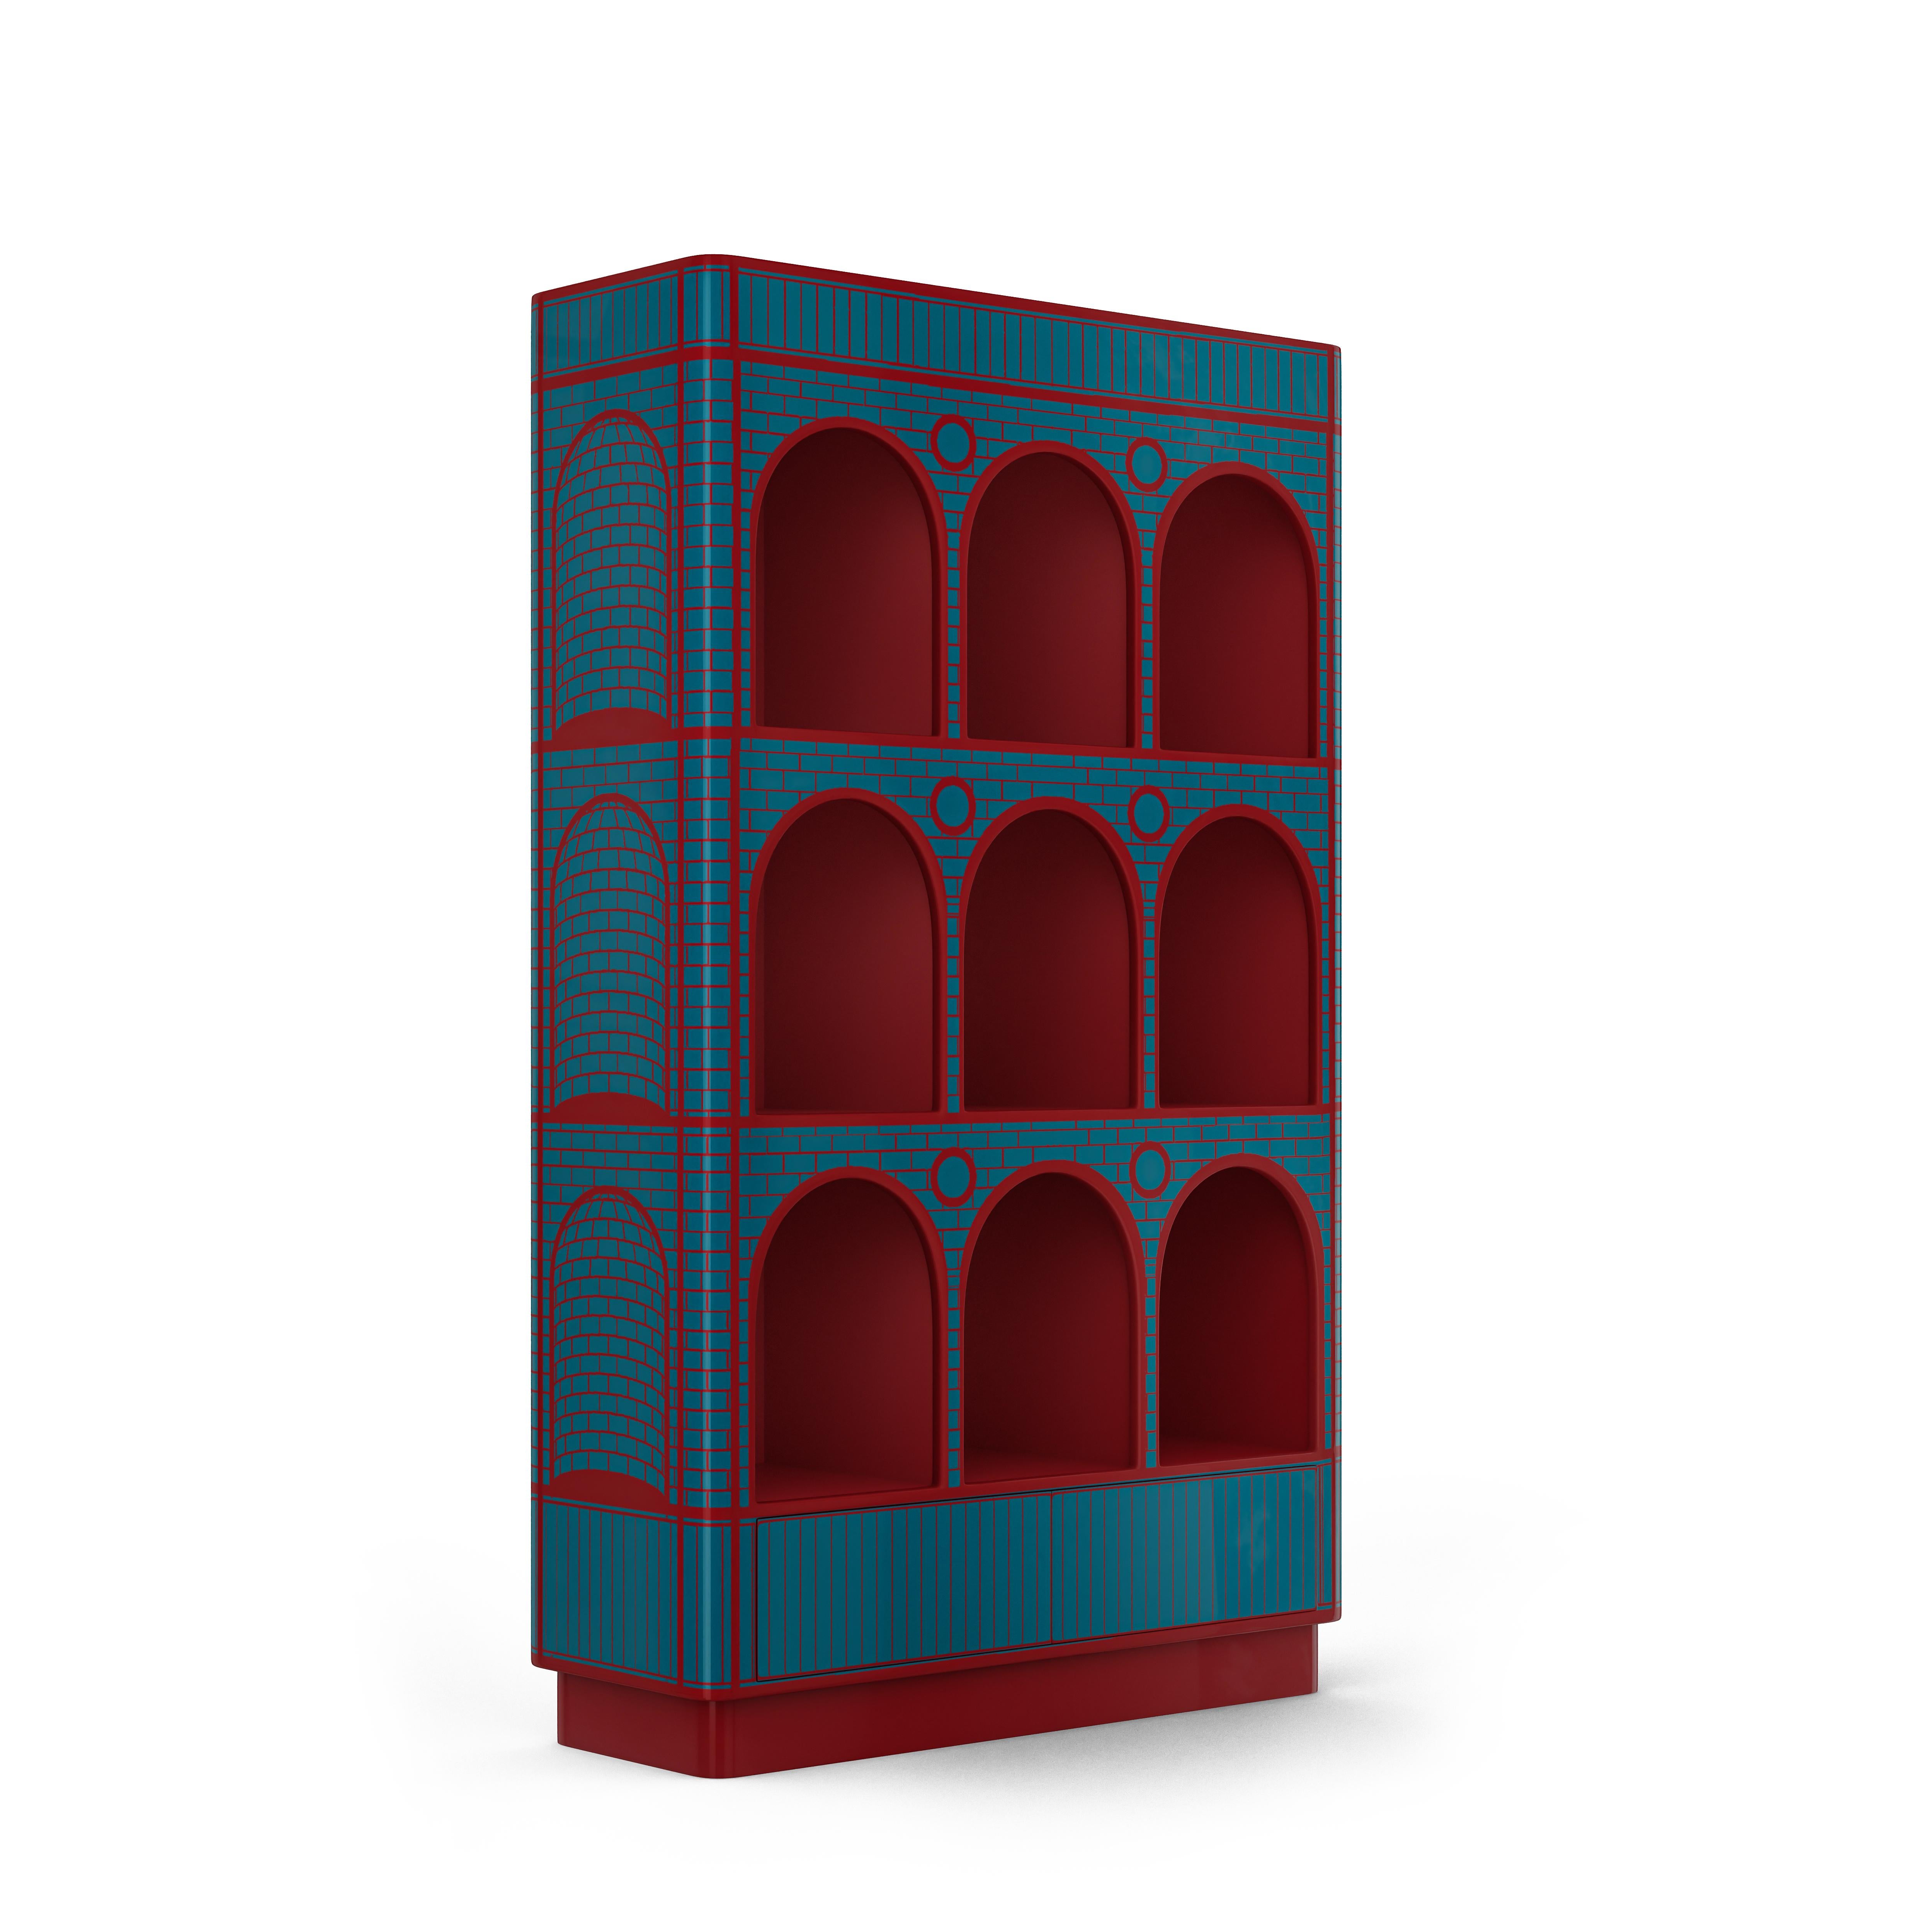 Le meuble vitrine Count berry bleu et rouge de Matteo Cibic est un grand meuble de présentation ou de bibliothèque impressionnant.

Comme son nom l'indique, la collection de gelato Scarlet Splendour vous apporte une familiarité réconfortante et